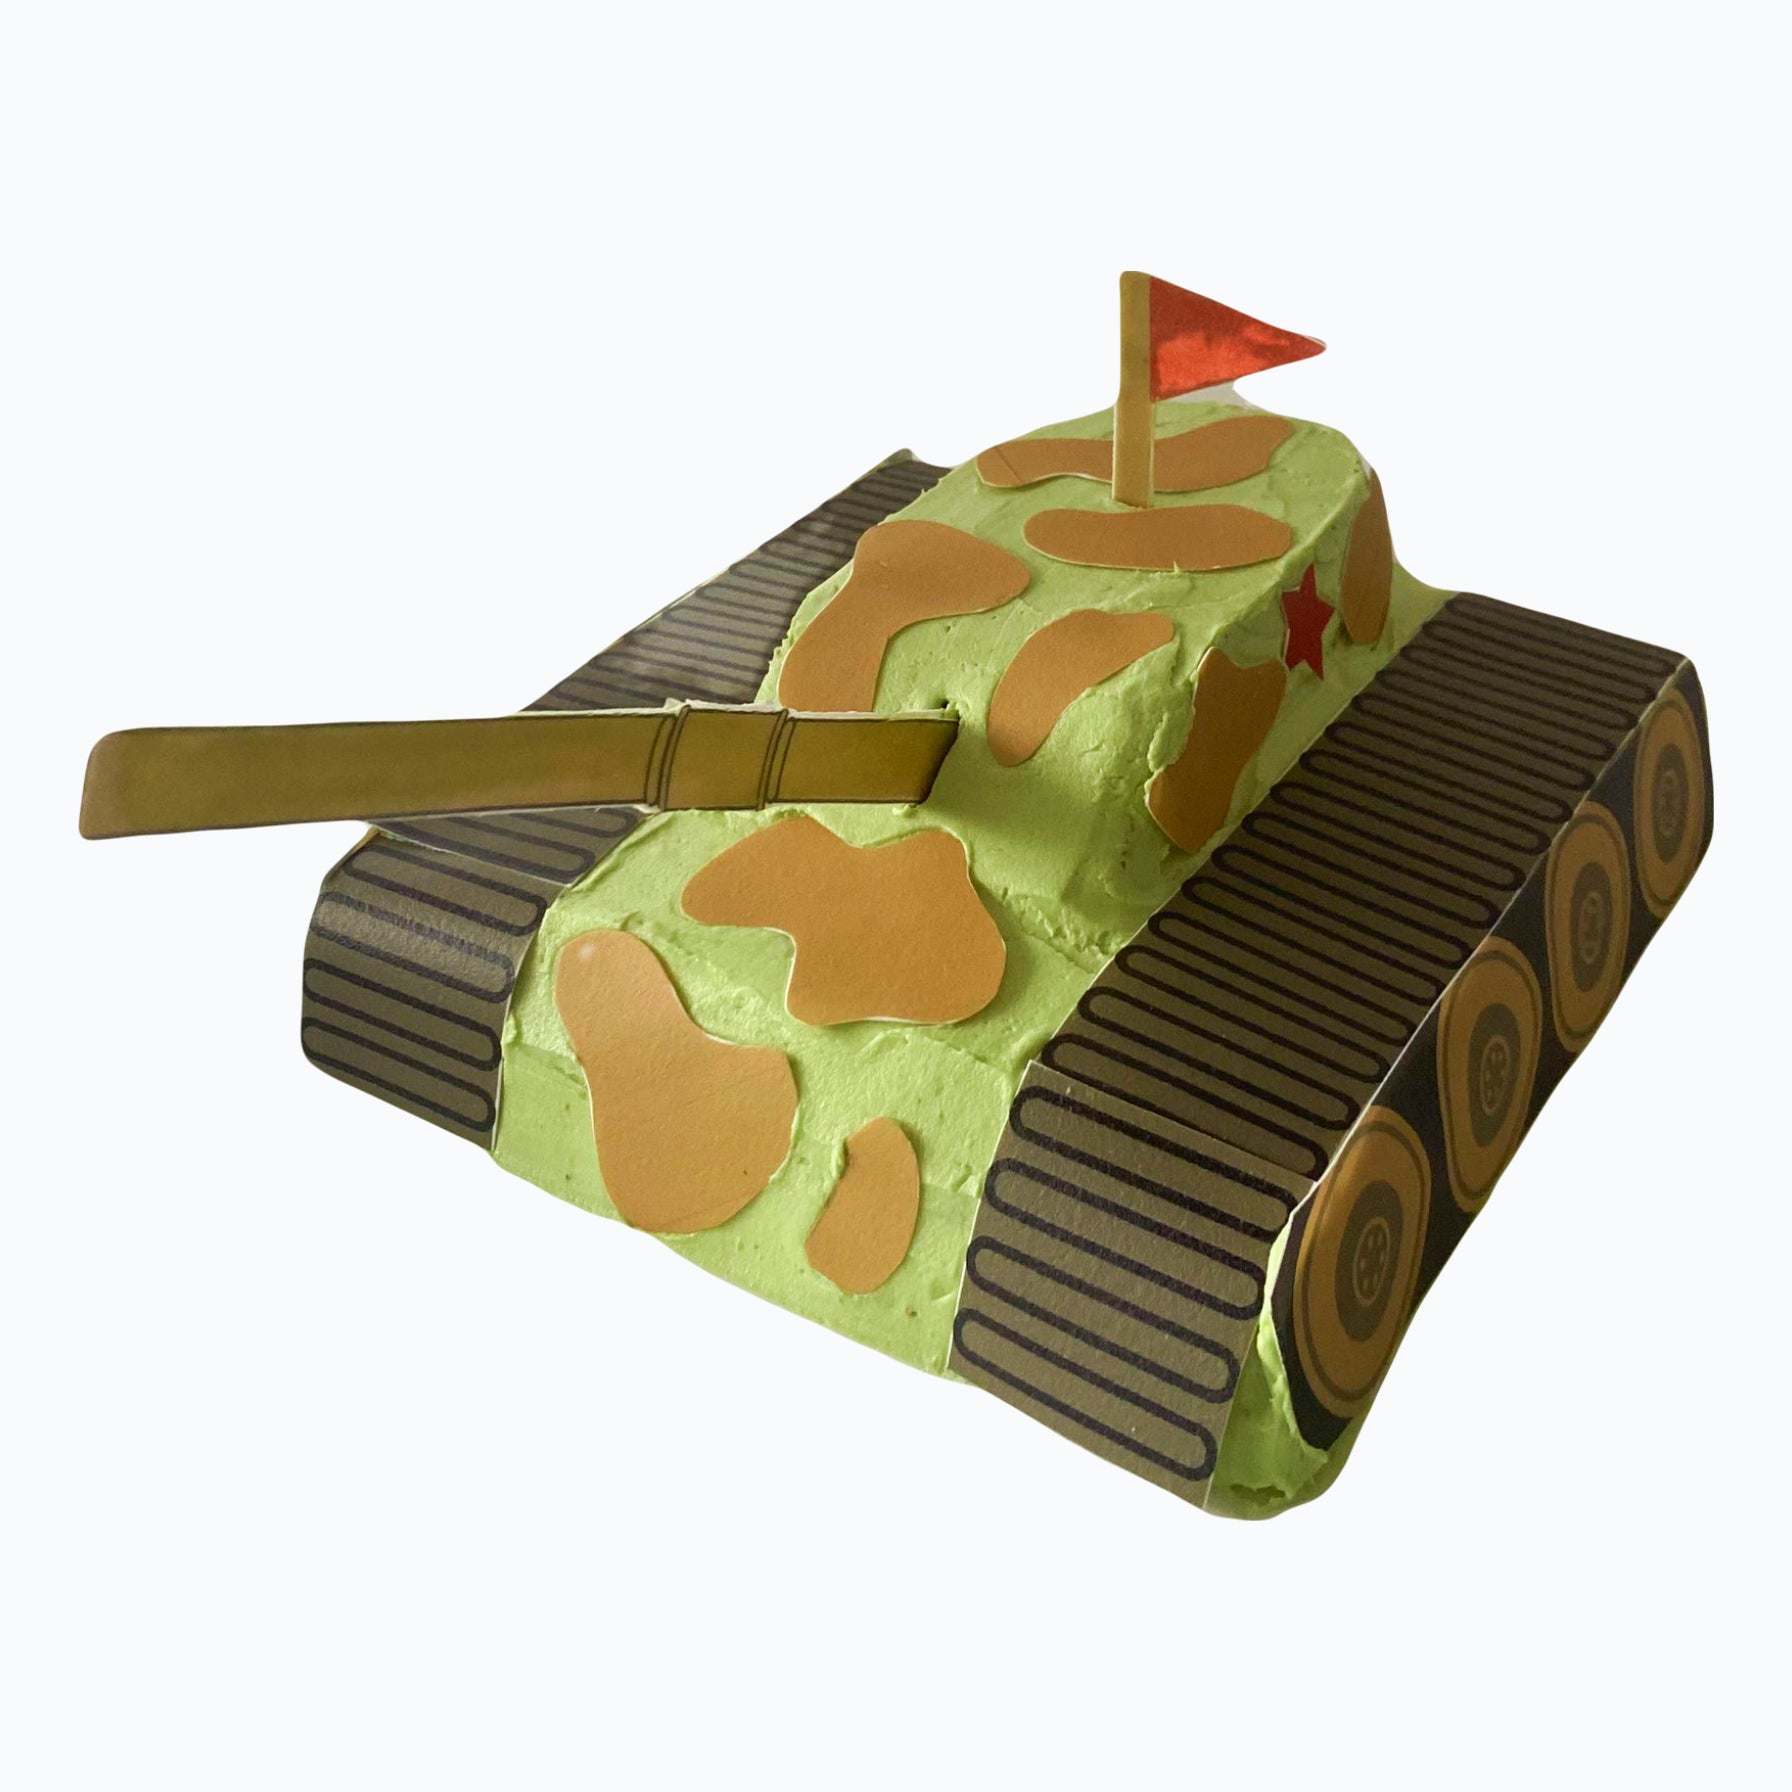 Army Tank Cake Kit